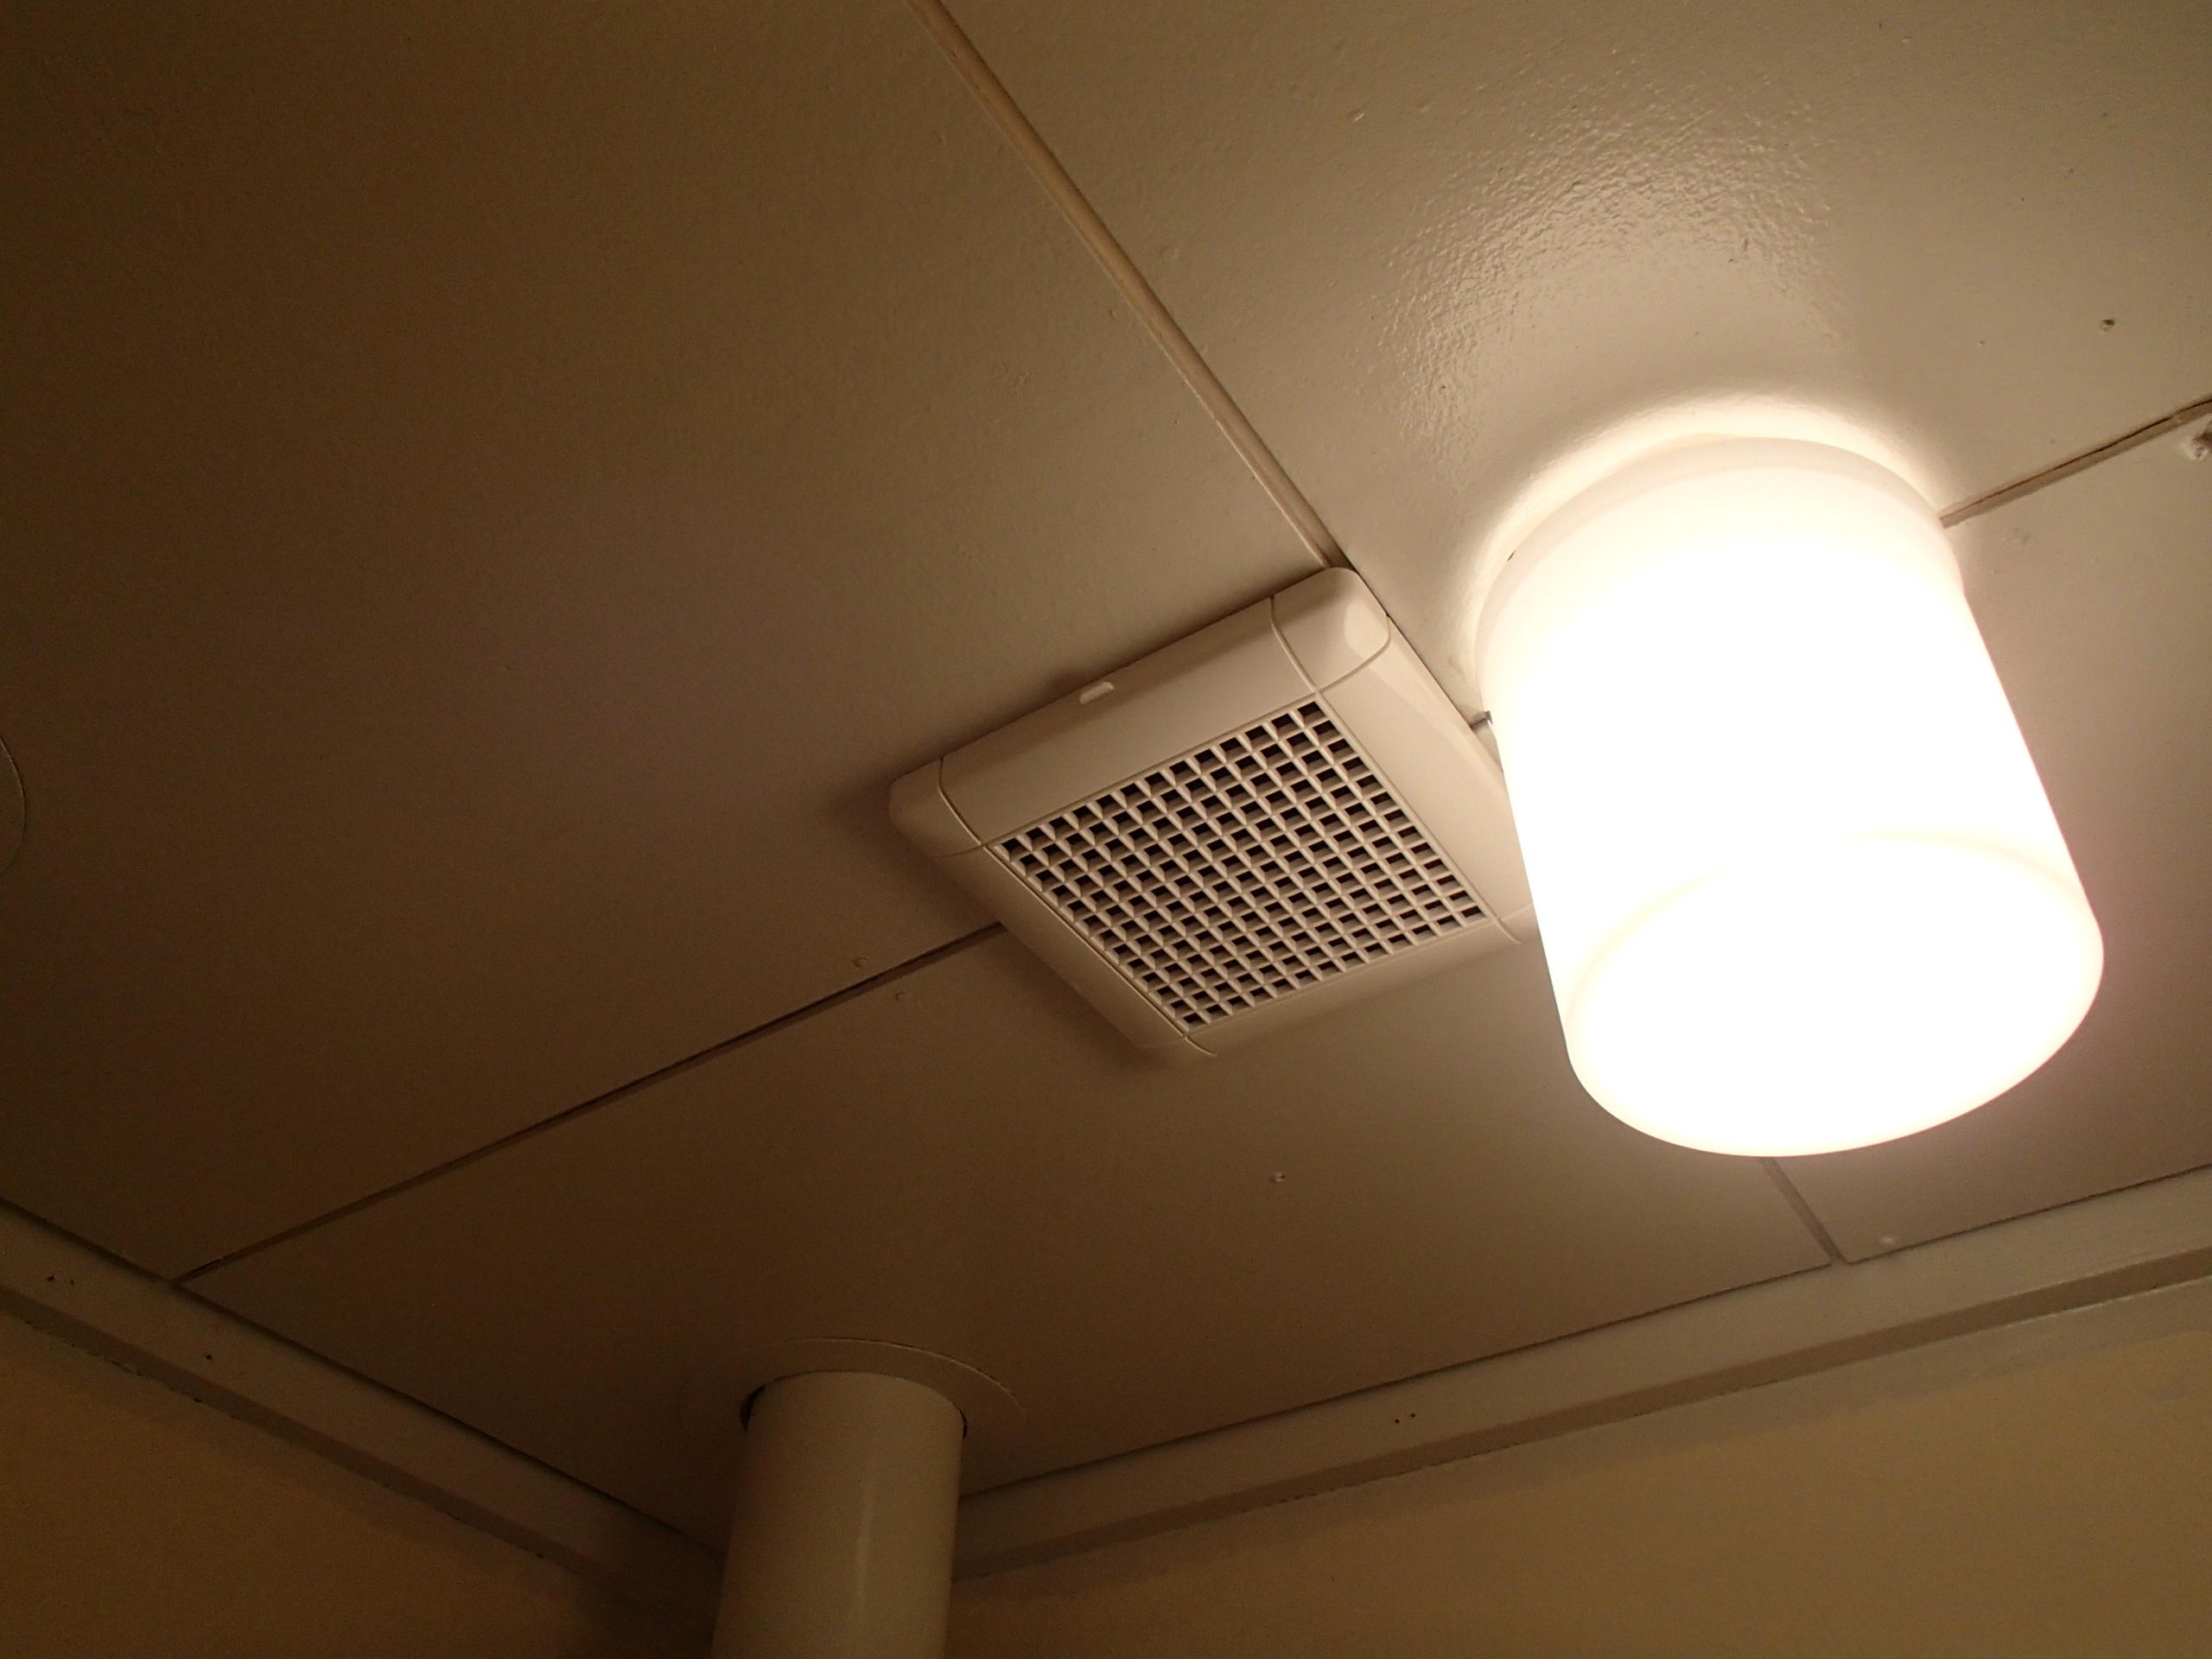 愛知県名古屋市 マンションアパート 浴室換気扇取替え交換工事画像